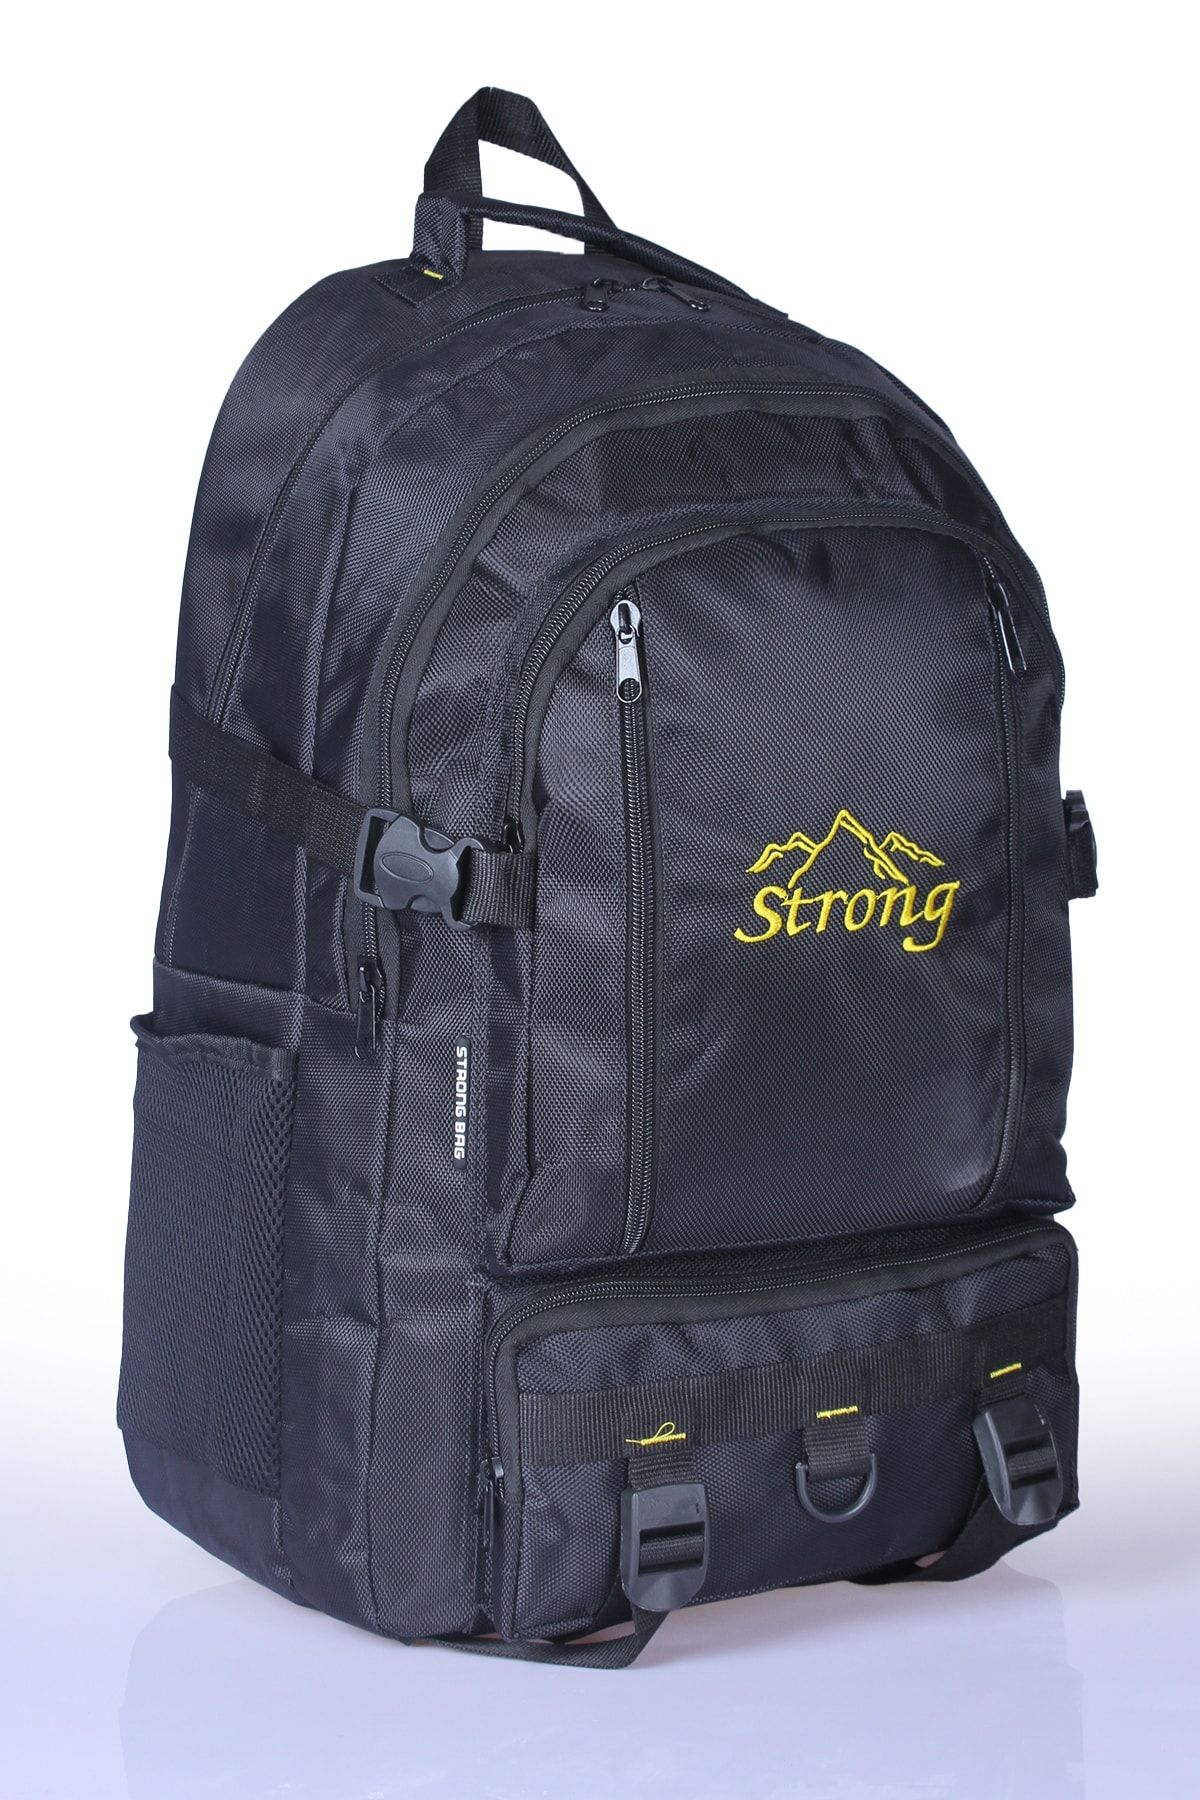 Strong Bag Strong 17-18.4 Inch Laptop Bölmeli Büyük Boy Sırt Çantası,dağcı Çantası,seyahat Kamp Çantası